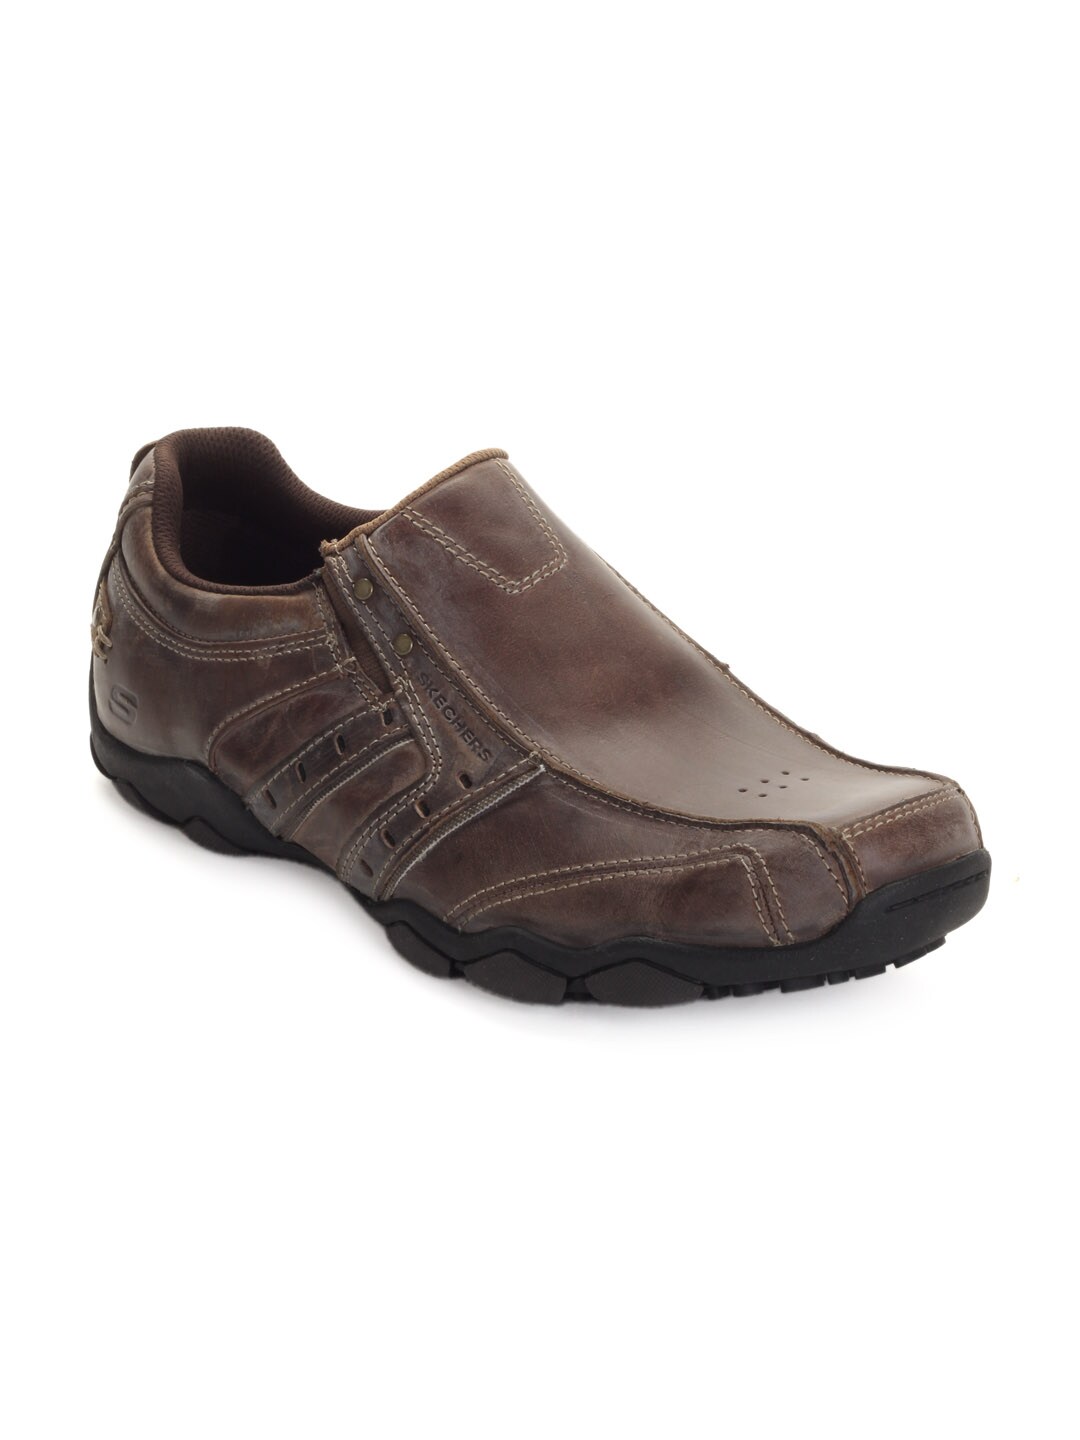 Skechers Men's Slip On Dark Brown Shoe